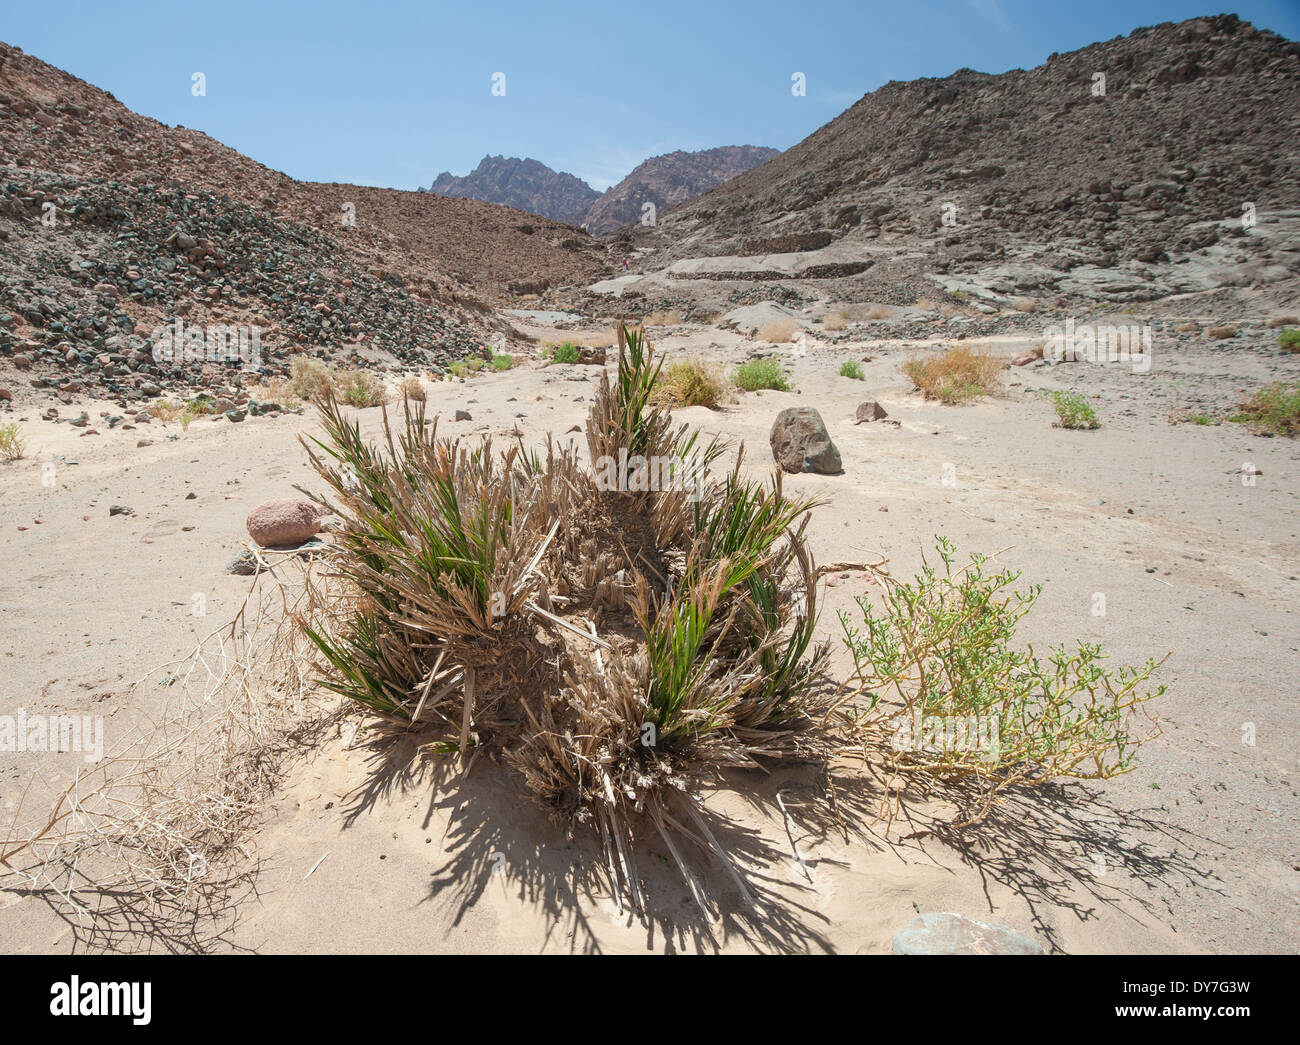 Deserto arido paesaggio nel telecomando egiziano deserto orientale con resti di data Palm tree in primo piano Foto Stock